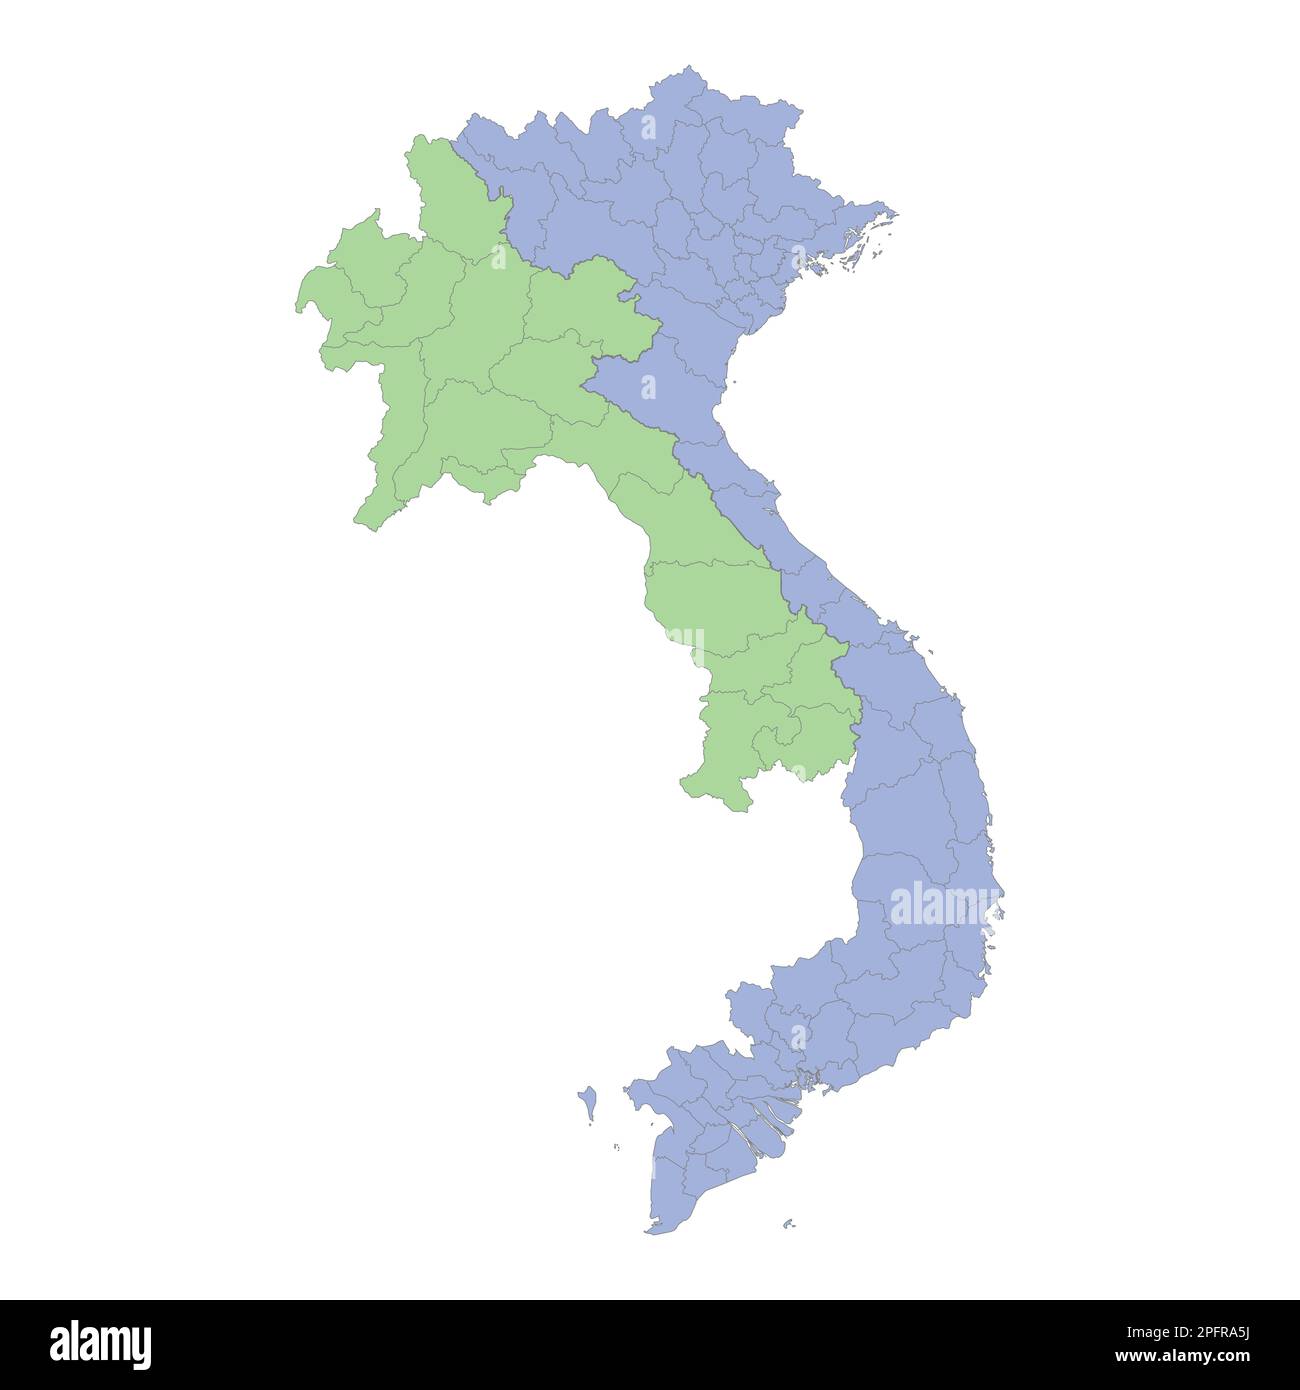 Mappa politica di alta qualità del Vietnam e del Laos con i confini delle regioni o province. Illustrazione vettoriale Illustrazione Vettoriale